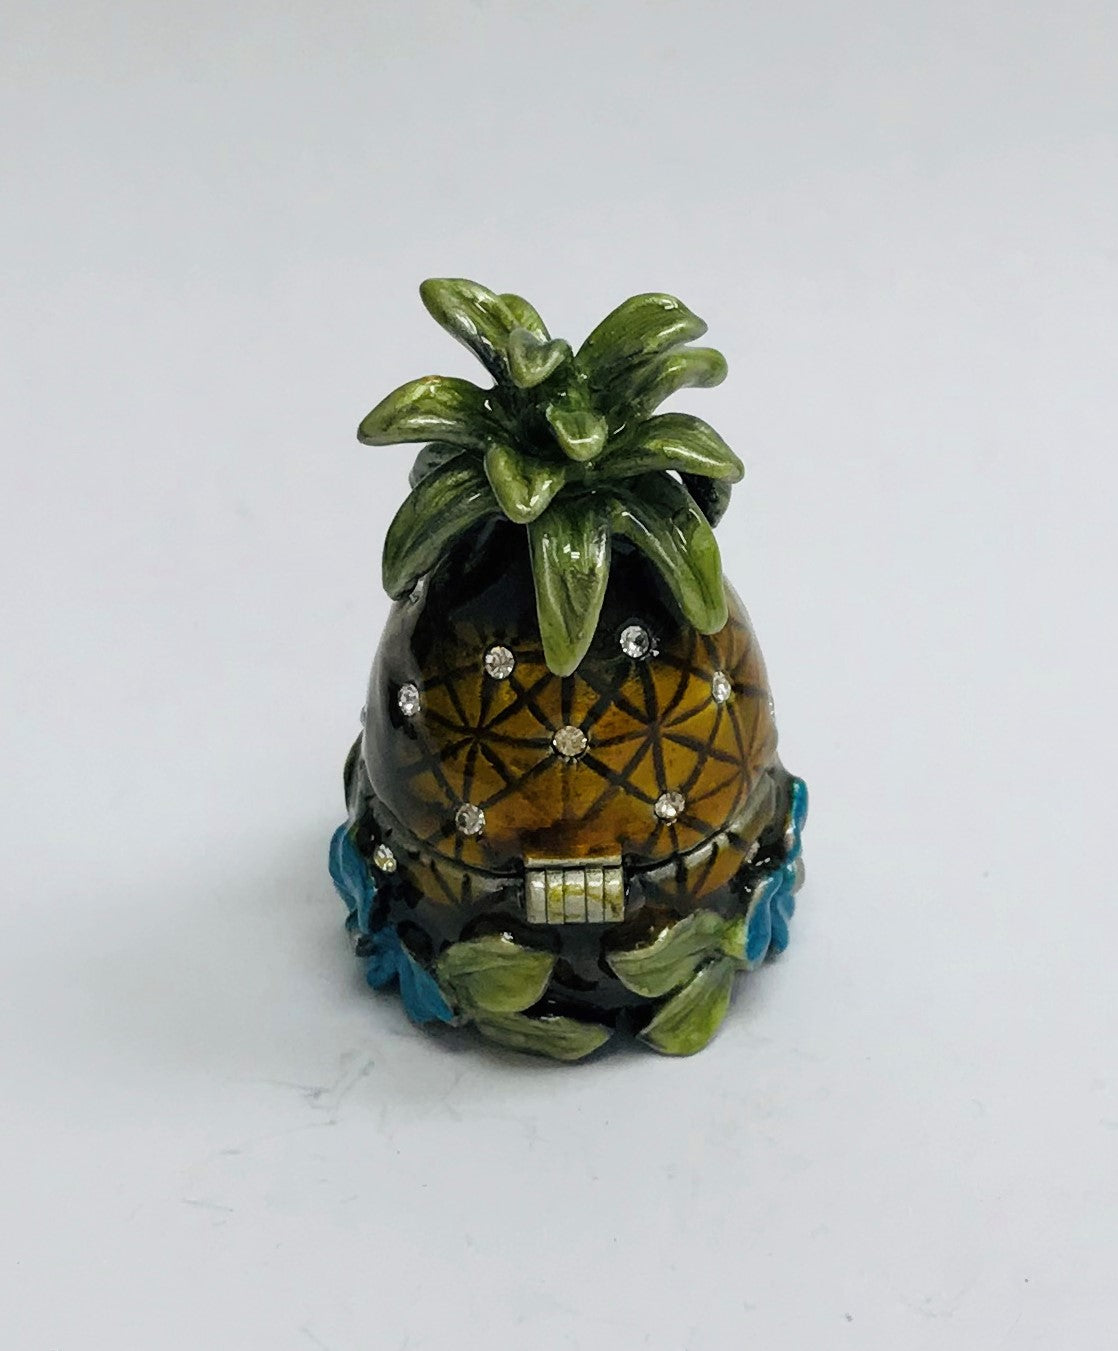 Cristiani Collezione Small Pineapple Trinket Box.